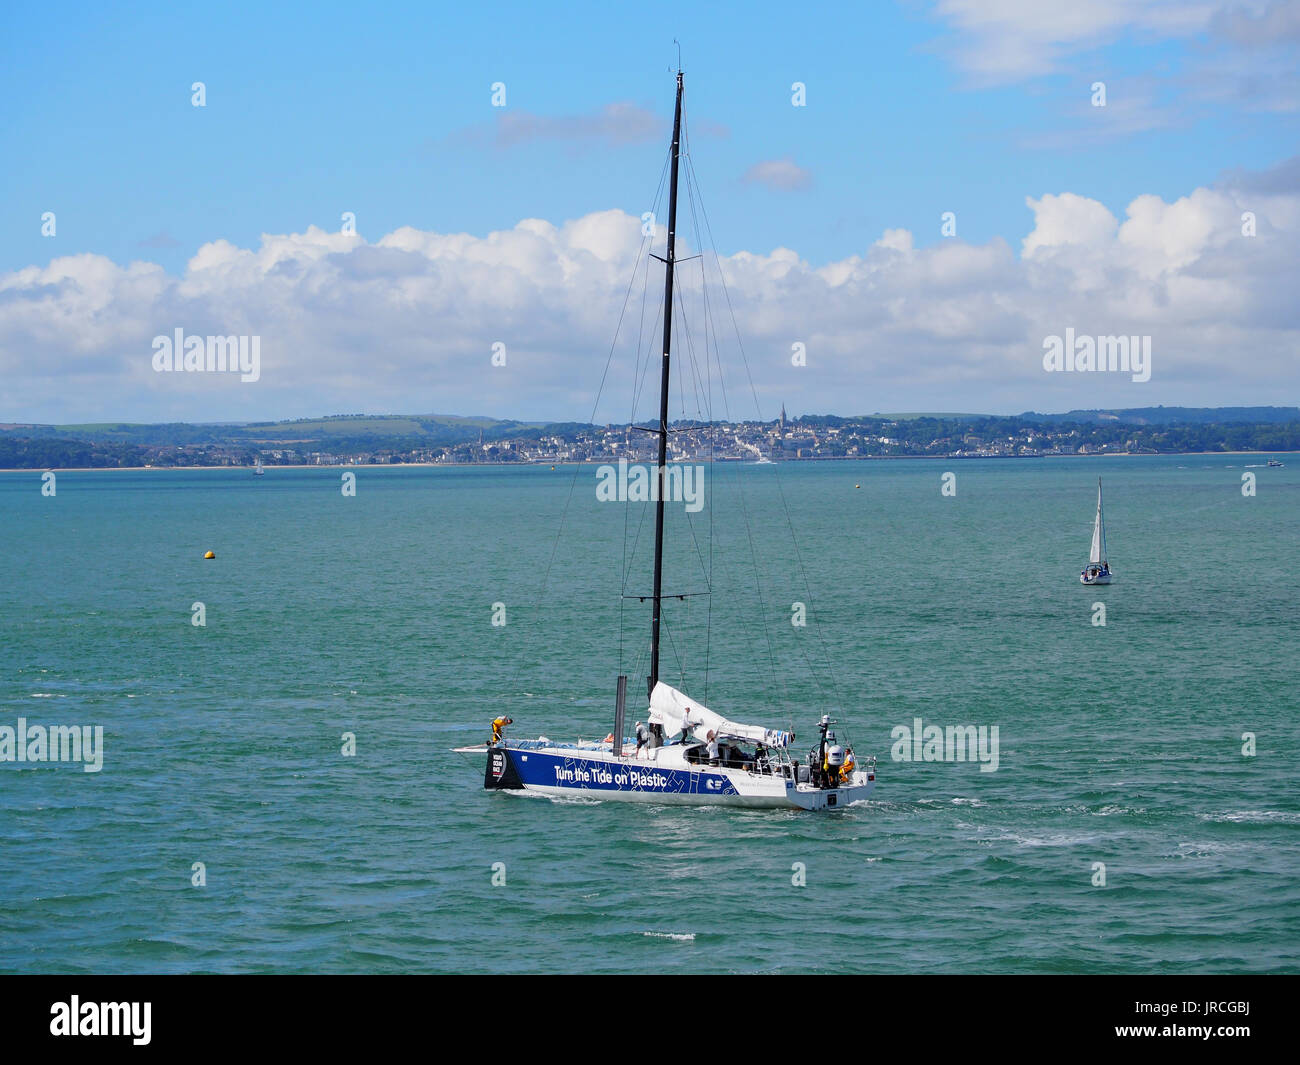 Lo yacht del team 'Girare la marea sulla plastica' preparazione per la Volvo Ocean race in Portsmouth Porto Foto Stock